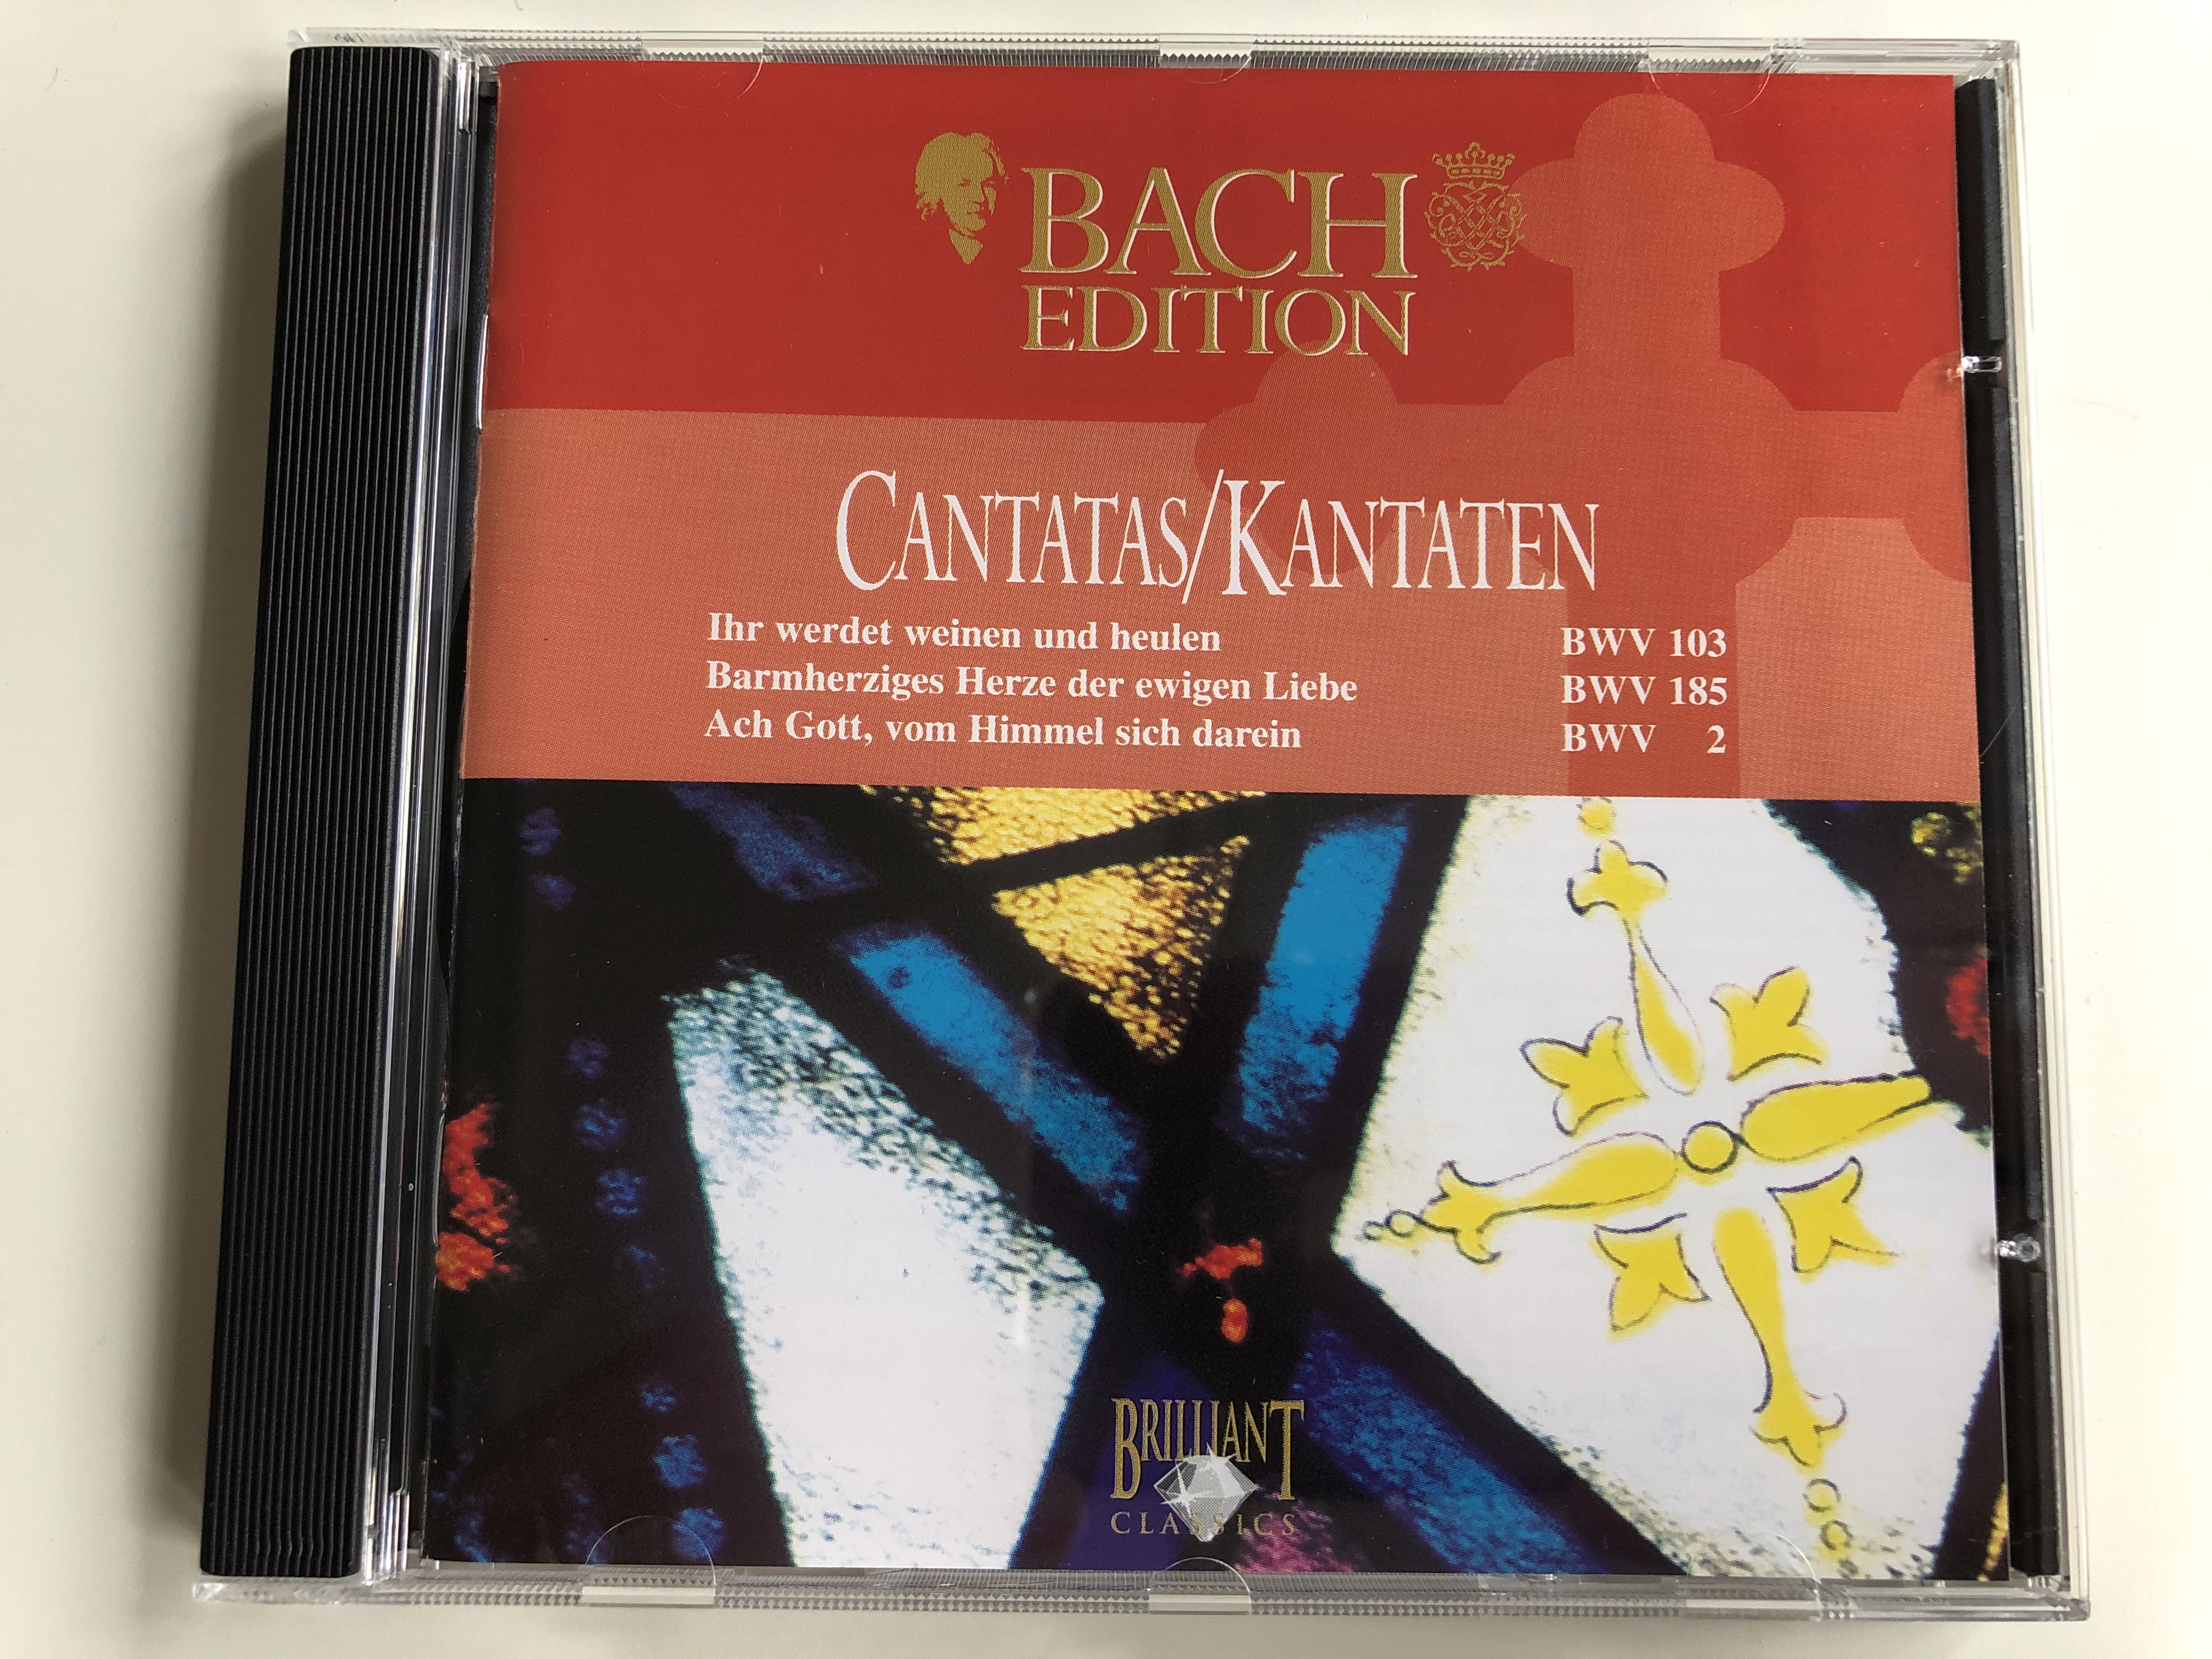 bach-edition-cantatas-kantaten-ihr-werdet-weinen-und-heulen-bwv-103-barmherziges-herze-der-ewigen-liebe-bwv-185-ach-gott-vom-himmel-sieh-darein-bwv-2-brilliant-classics-audio-cd-993711-1-.jpg